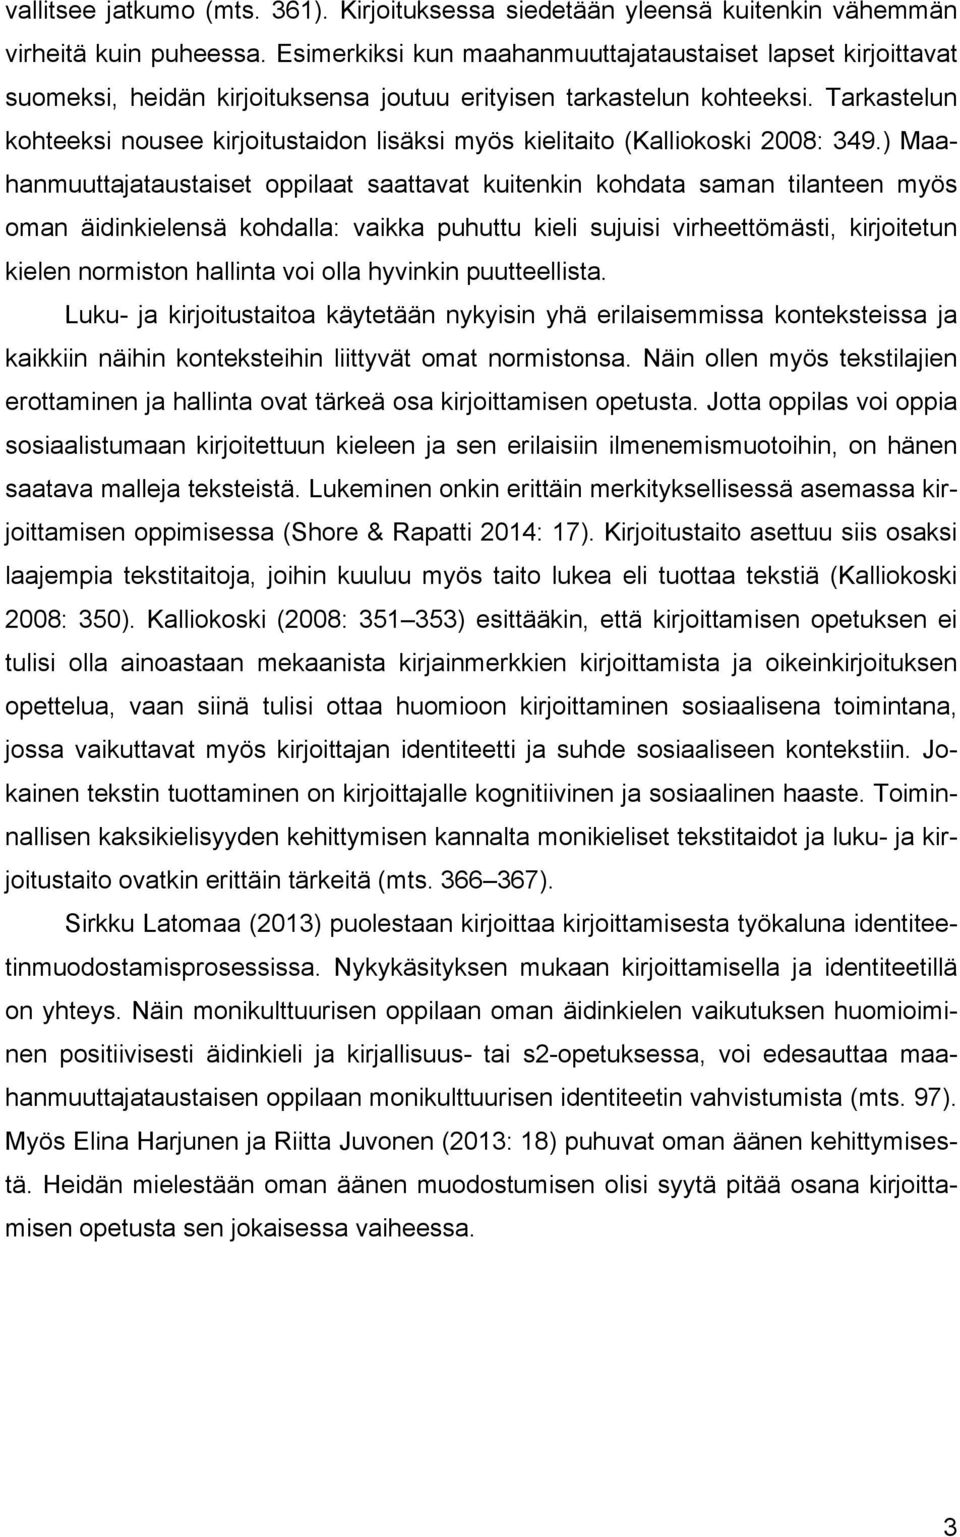 Tarkastelun kohteeksi nousee kirjoitustaidon lisäksi myös kielitaito (Kalliokoski 2008: 349.